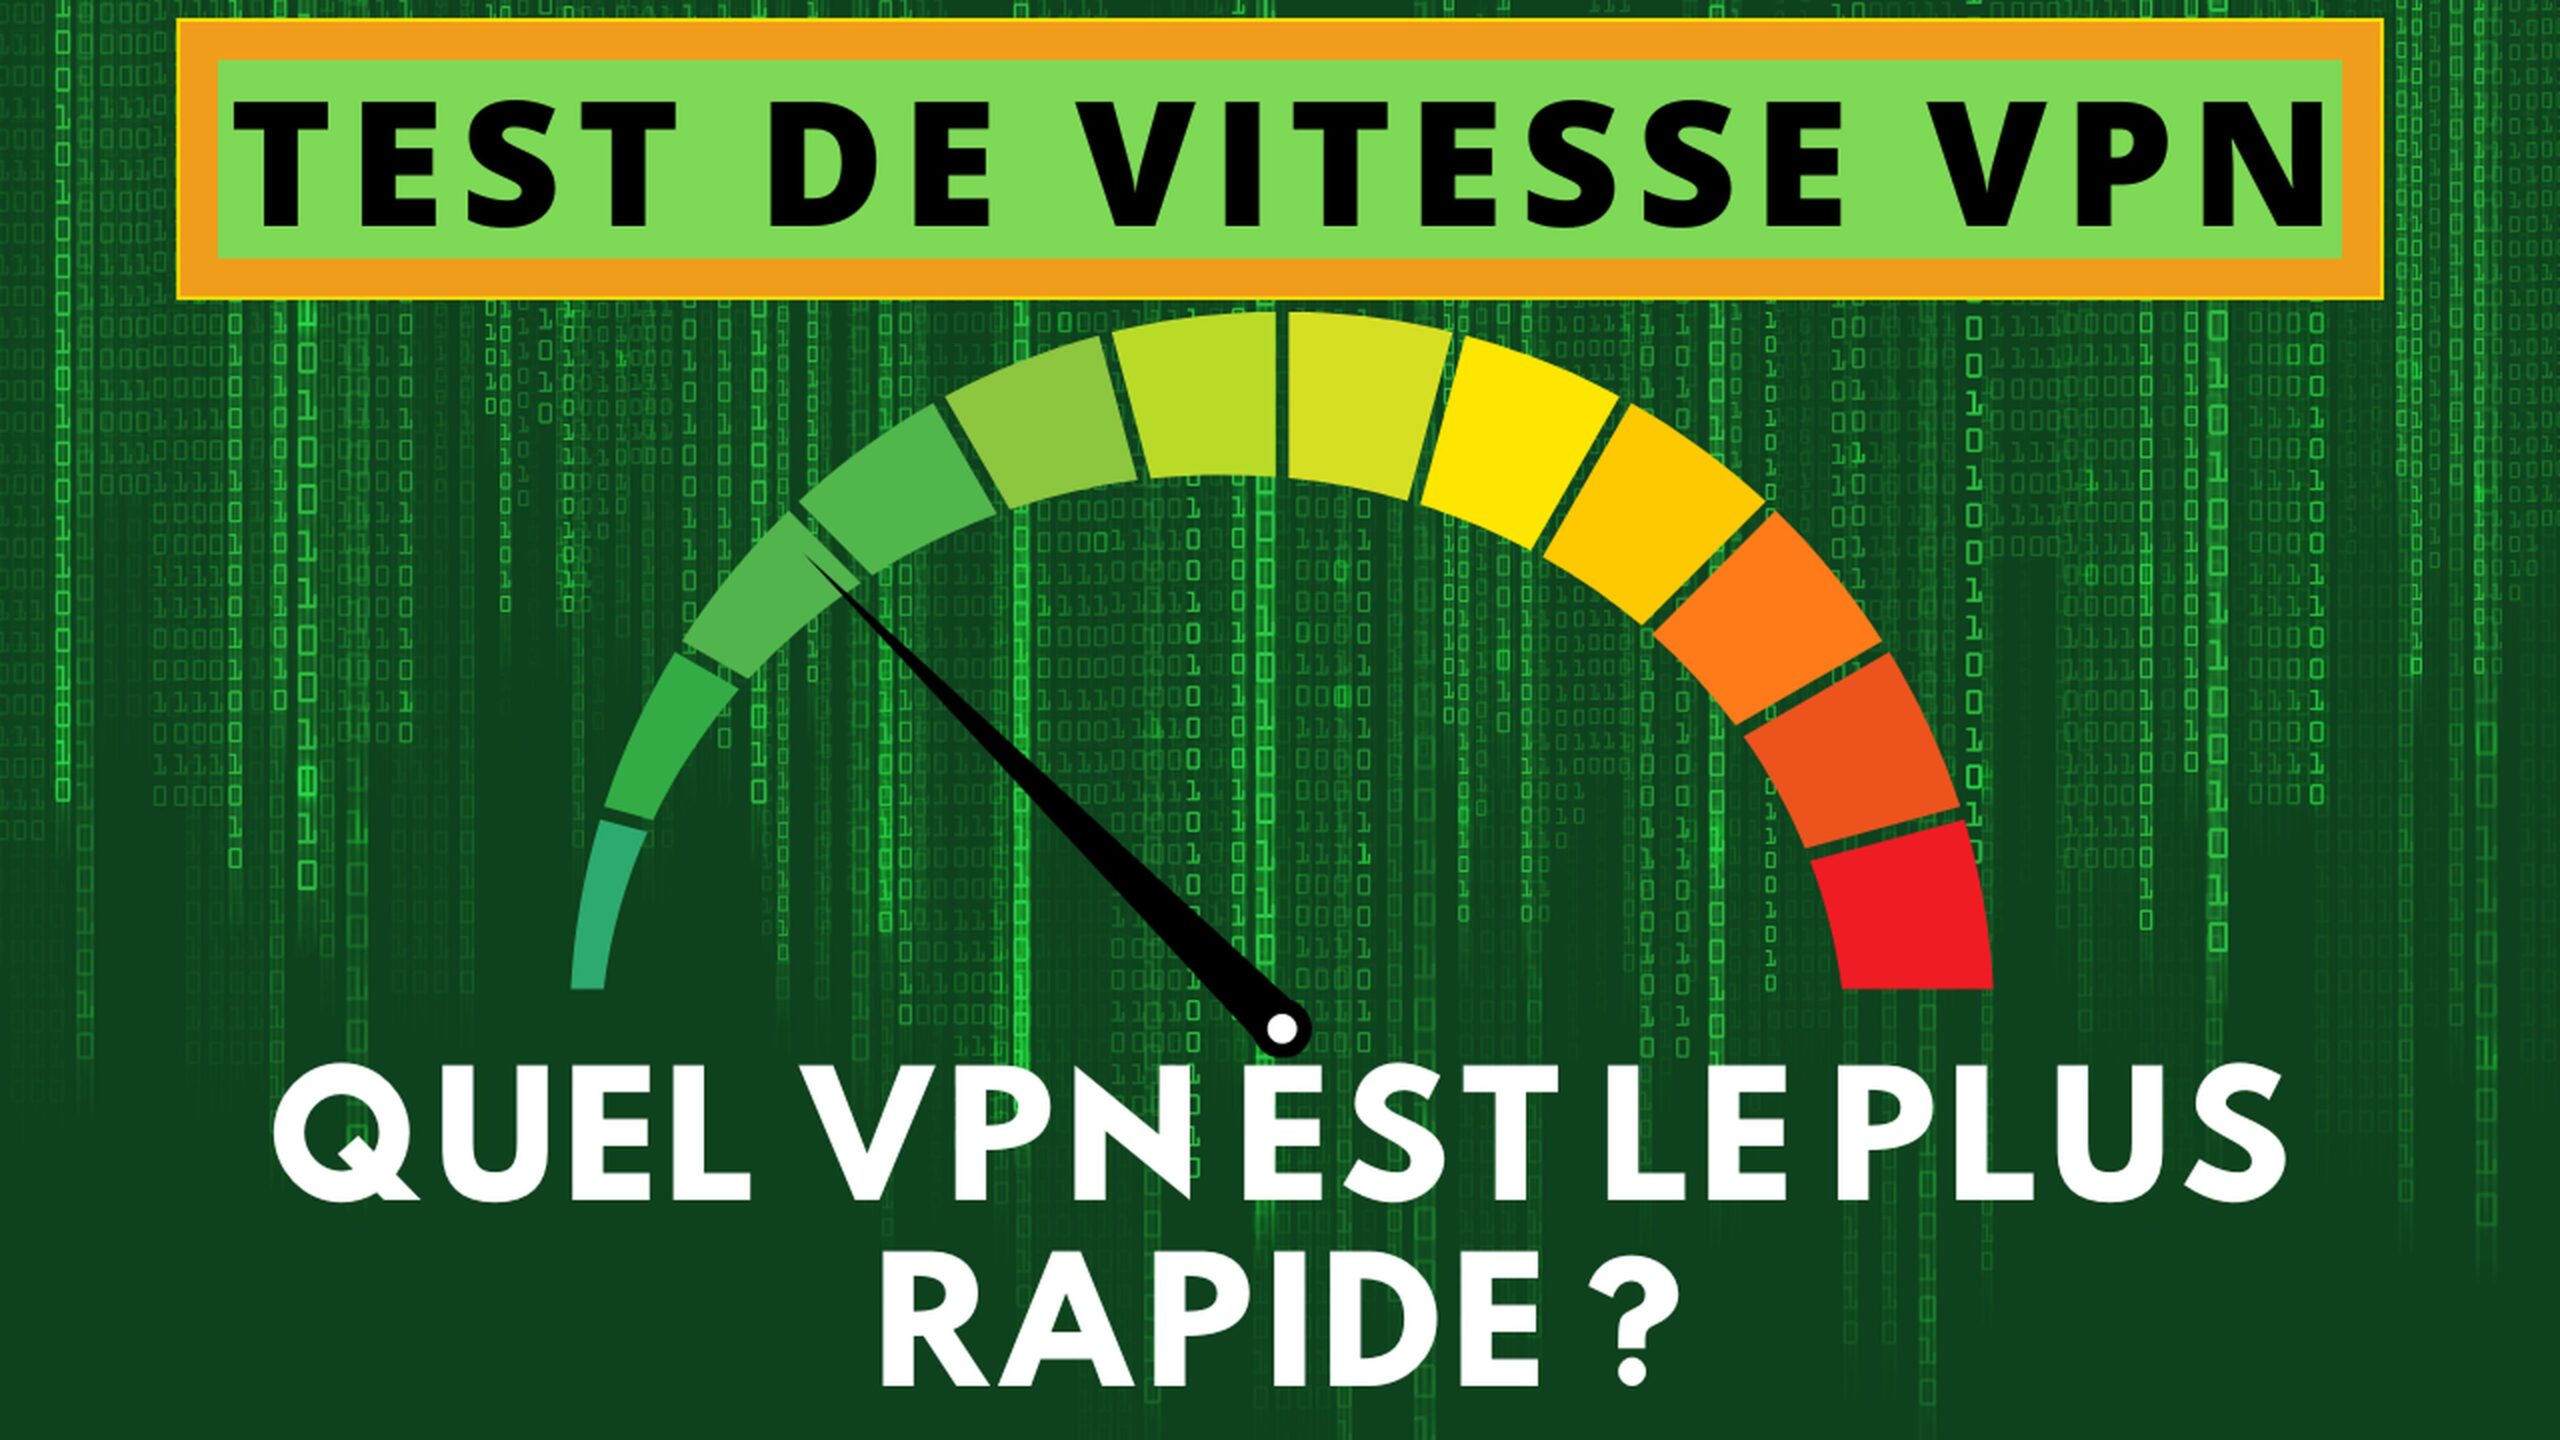 Quel VPN offre la meilleure vitesse ? - Test VPN les plus rapides 2